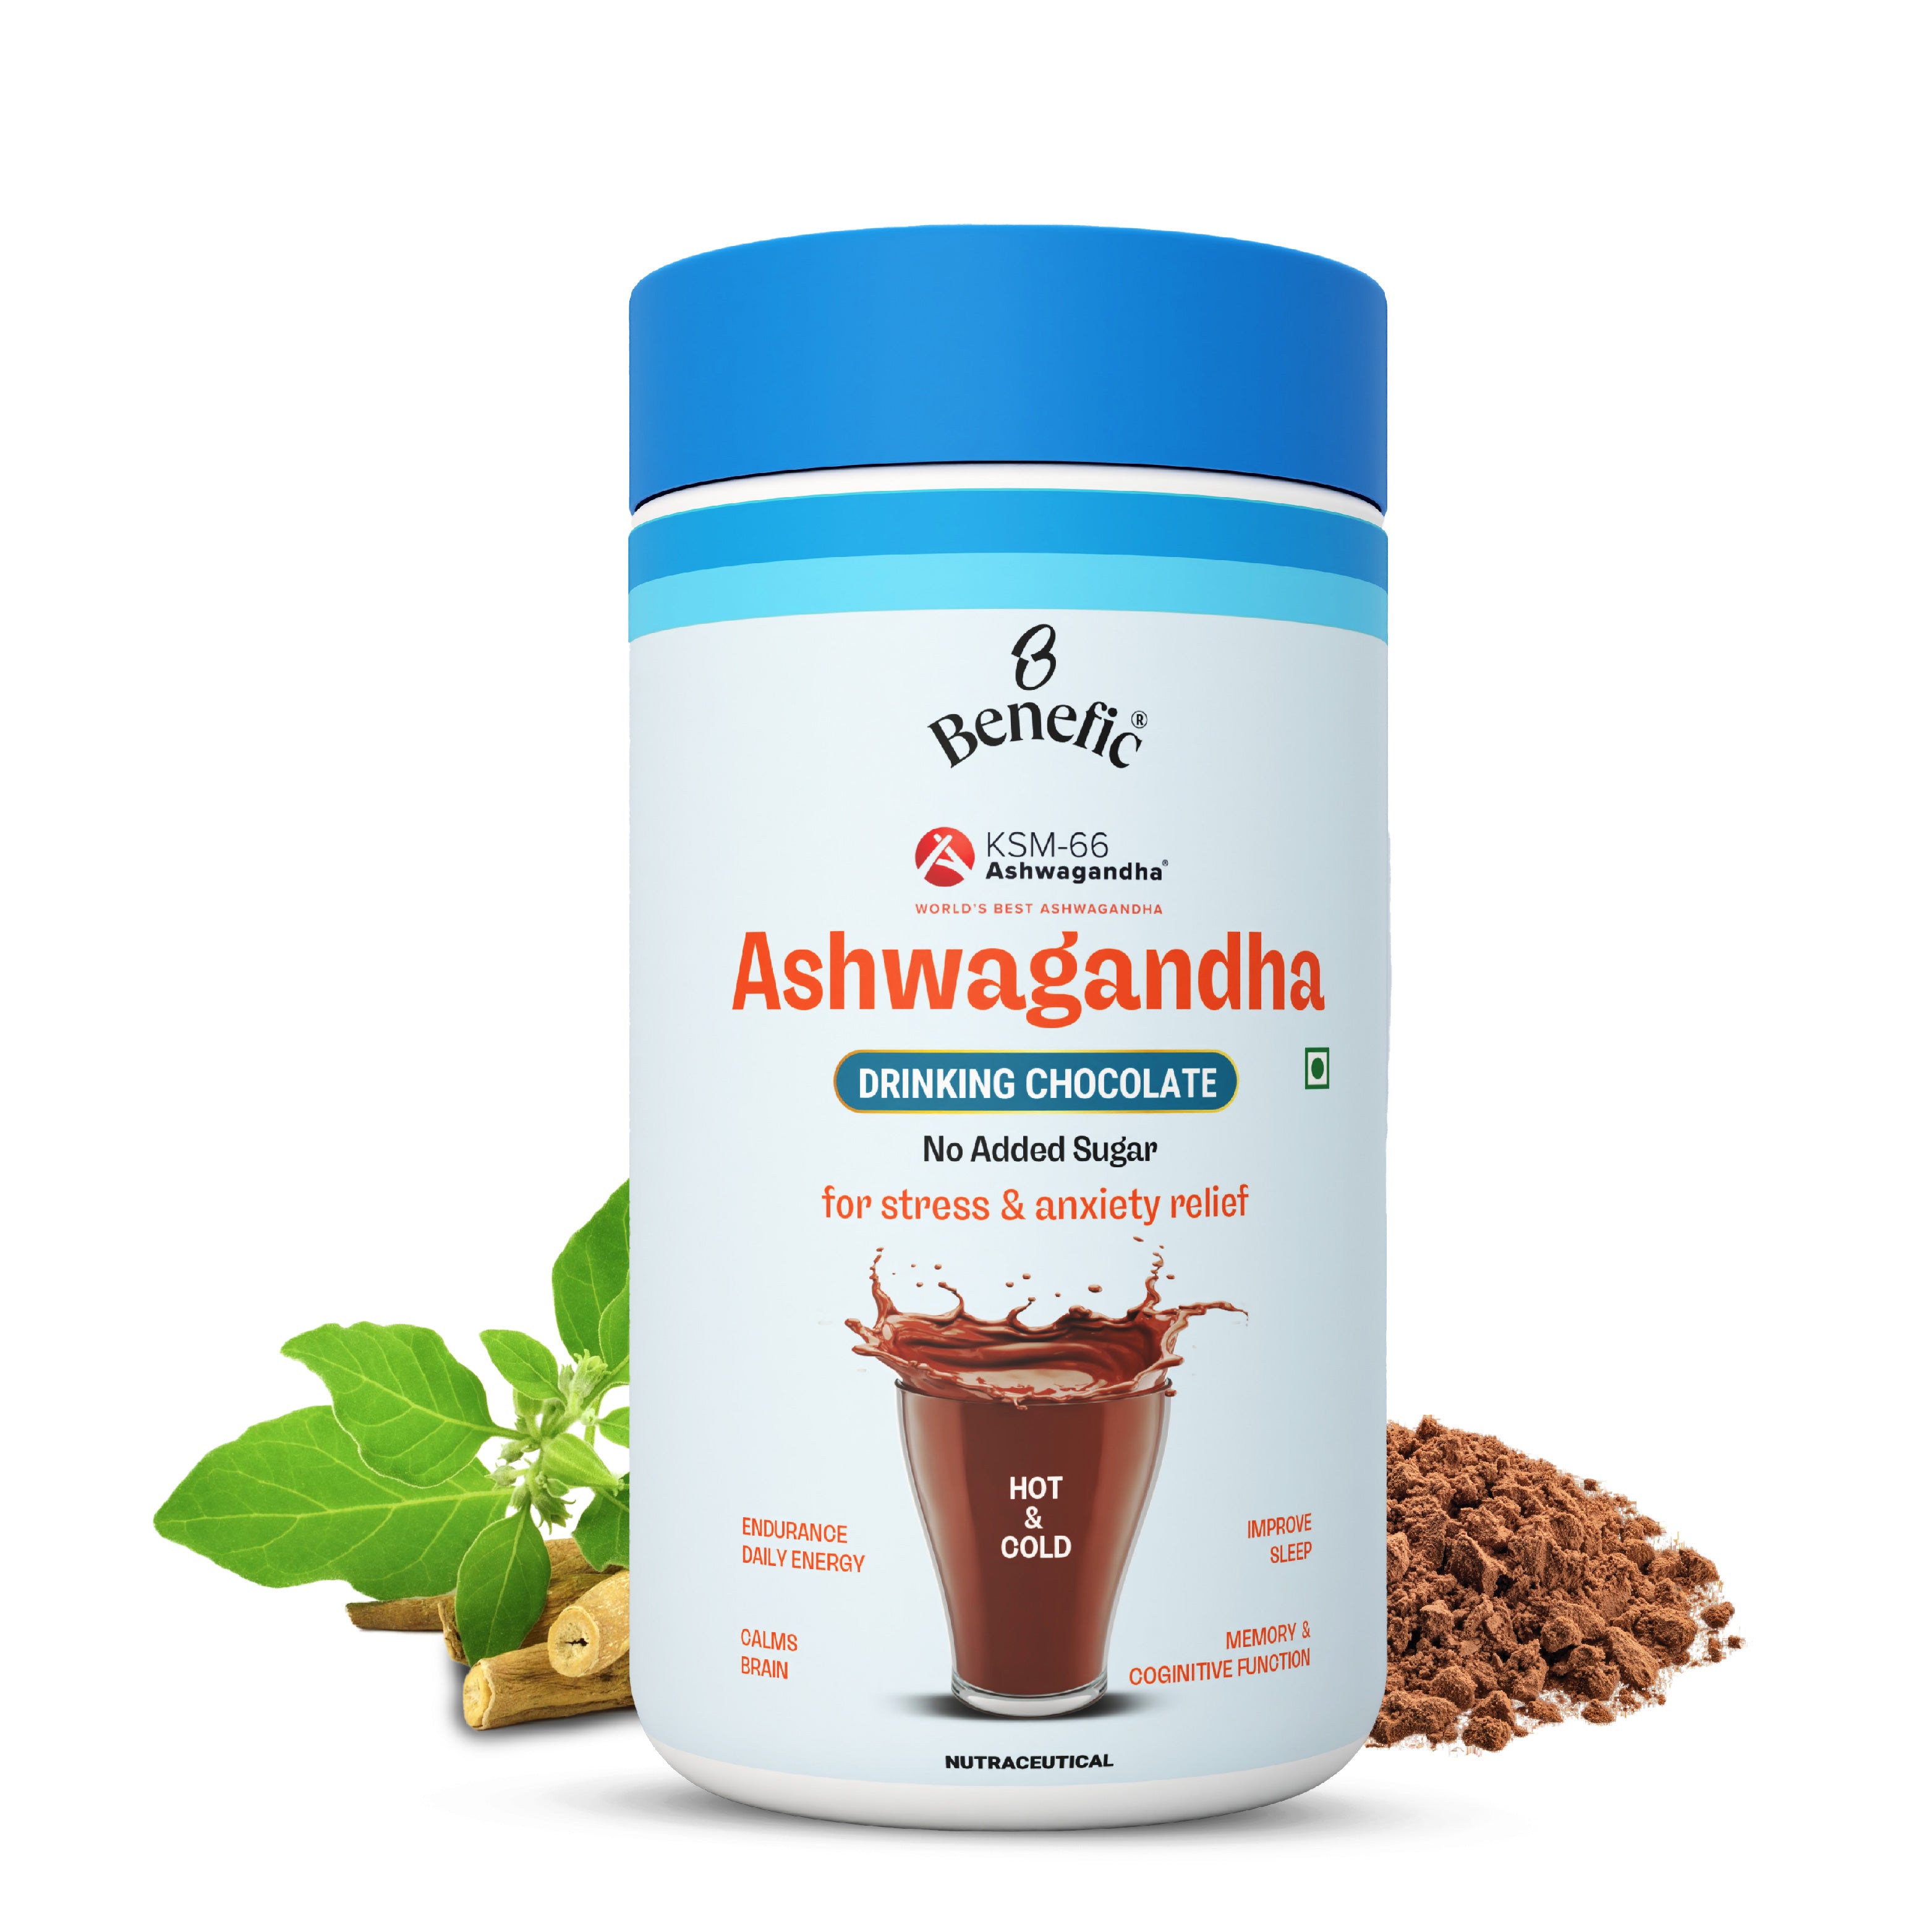 KSM-66 Ashwagandha Drinking Chocolate